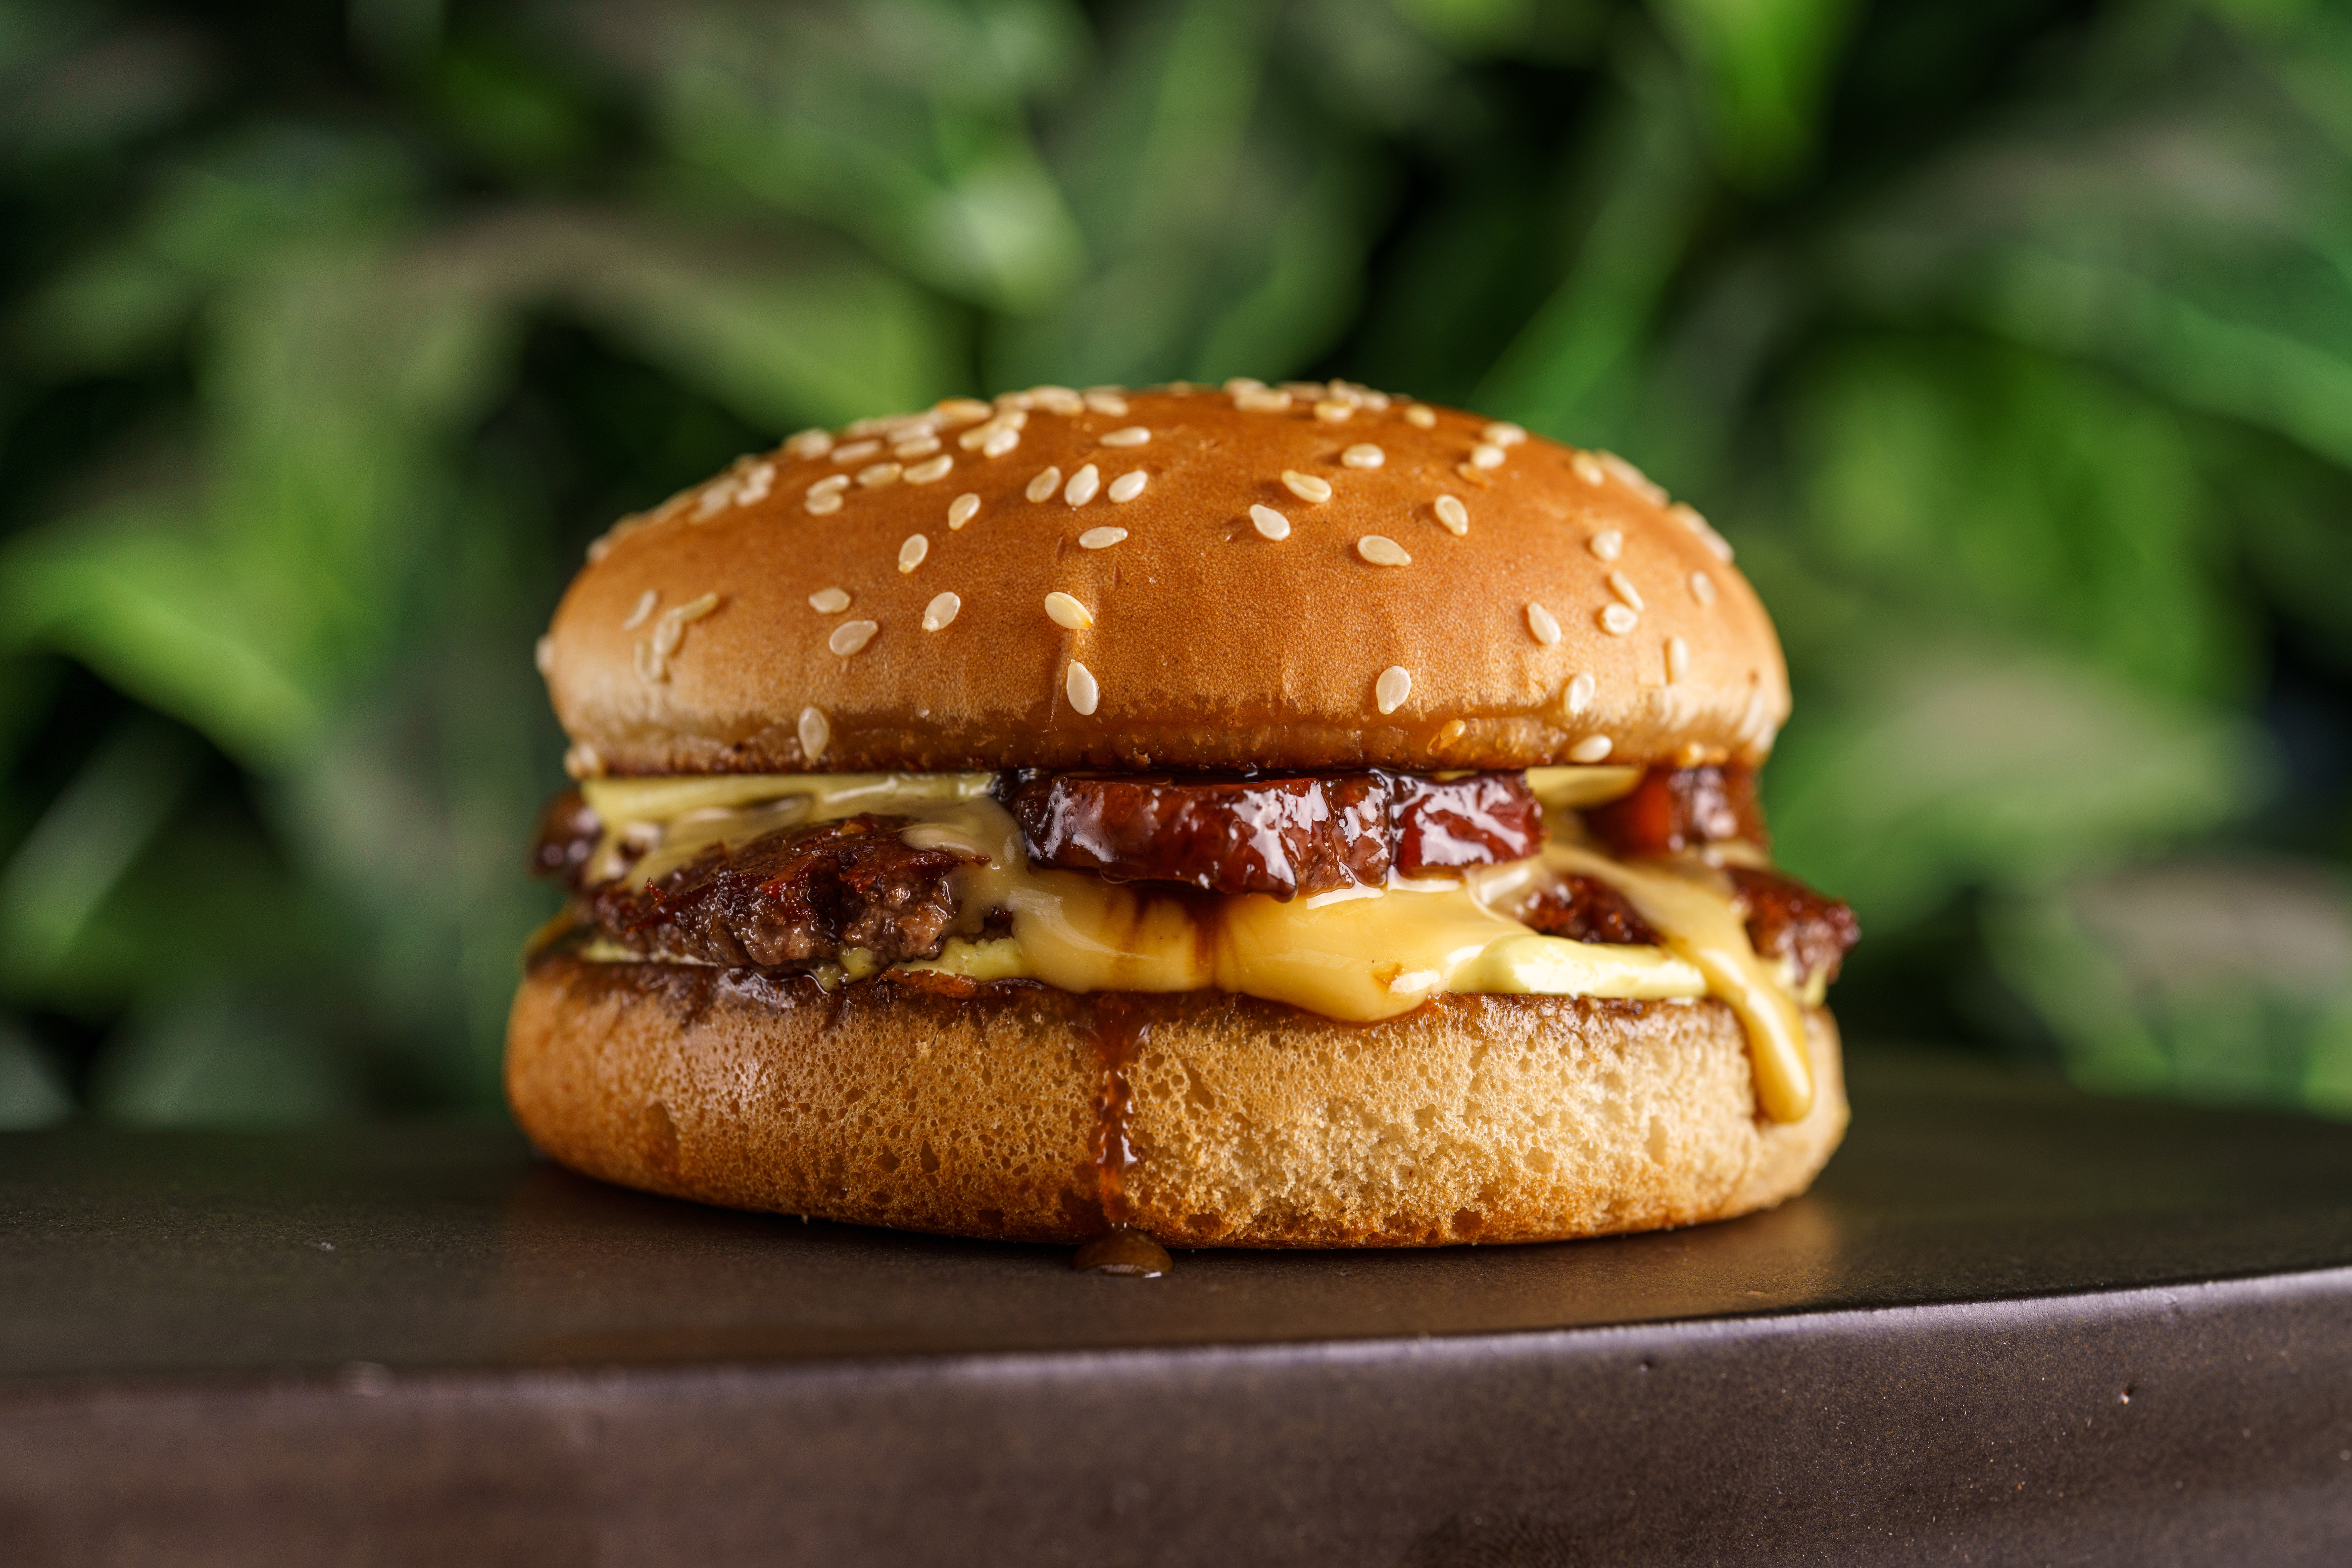 Cheese bacon servido no Jurassic Park Burger Restaurant composto de pão com gergelim branco, queijo e carne